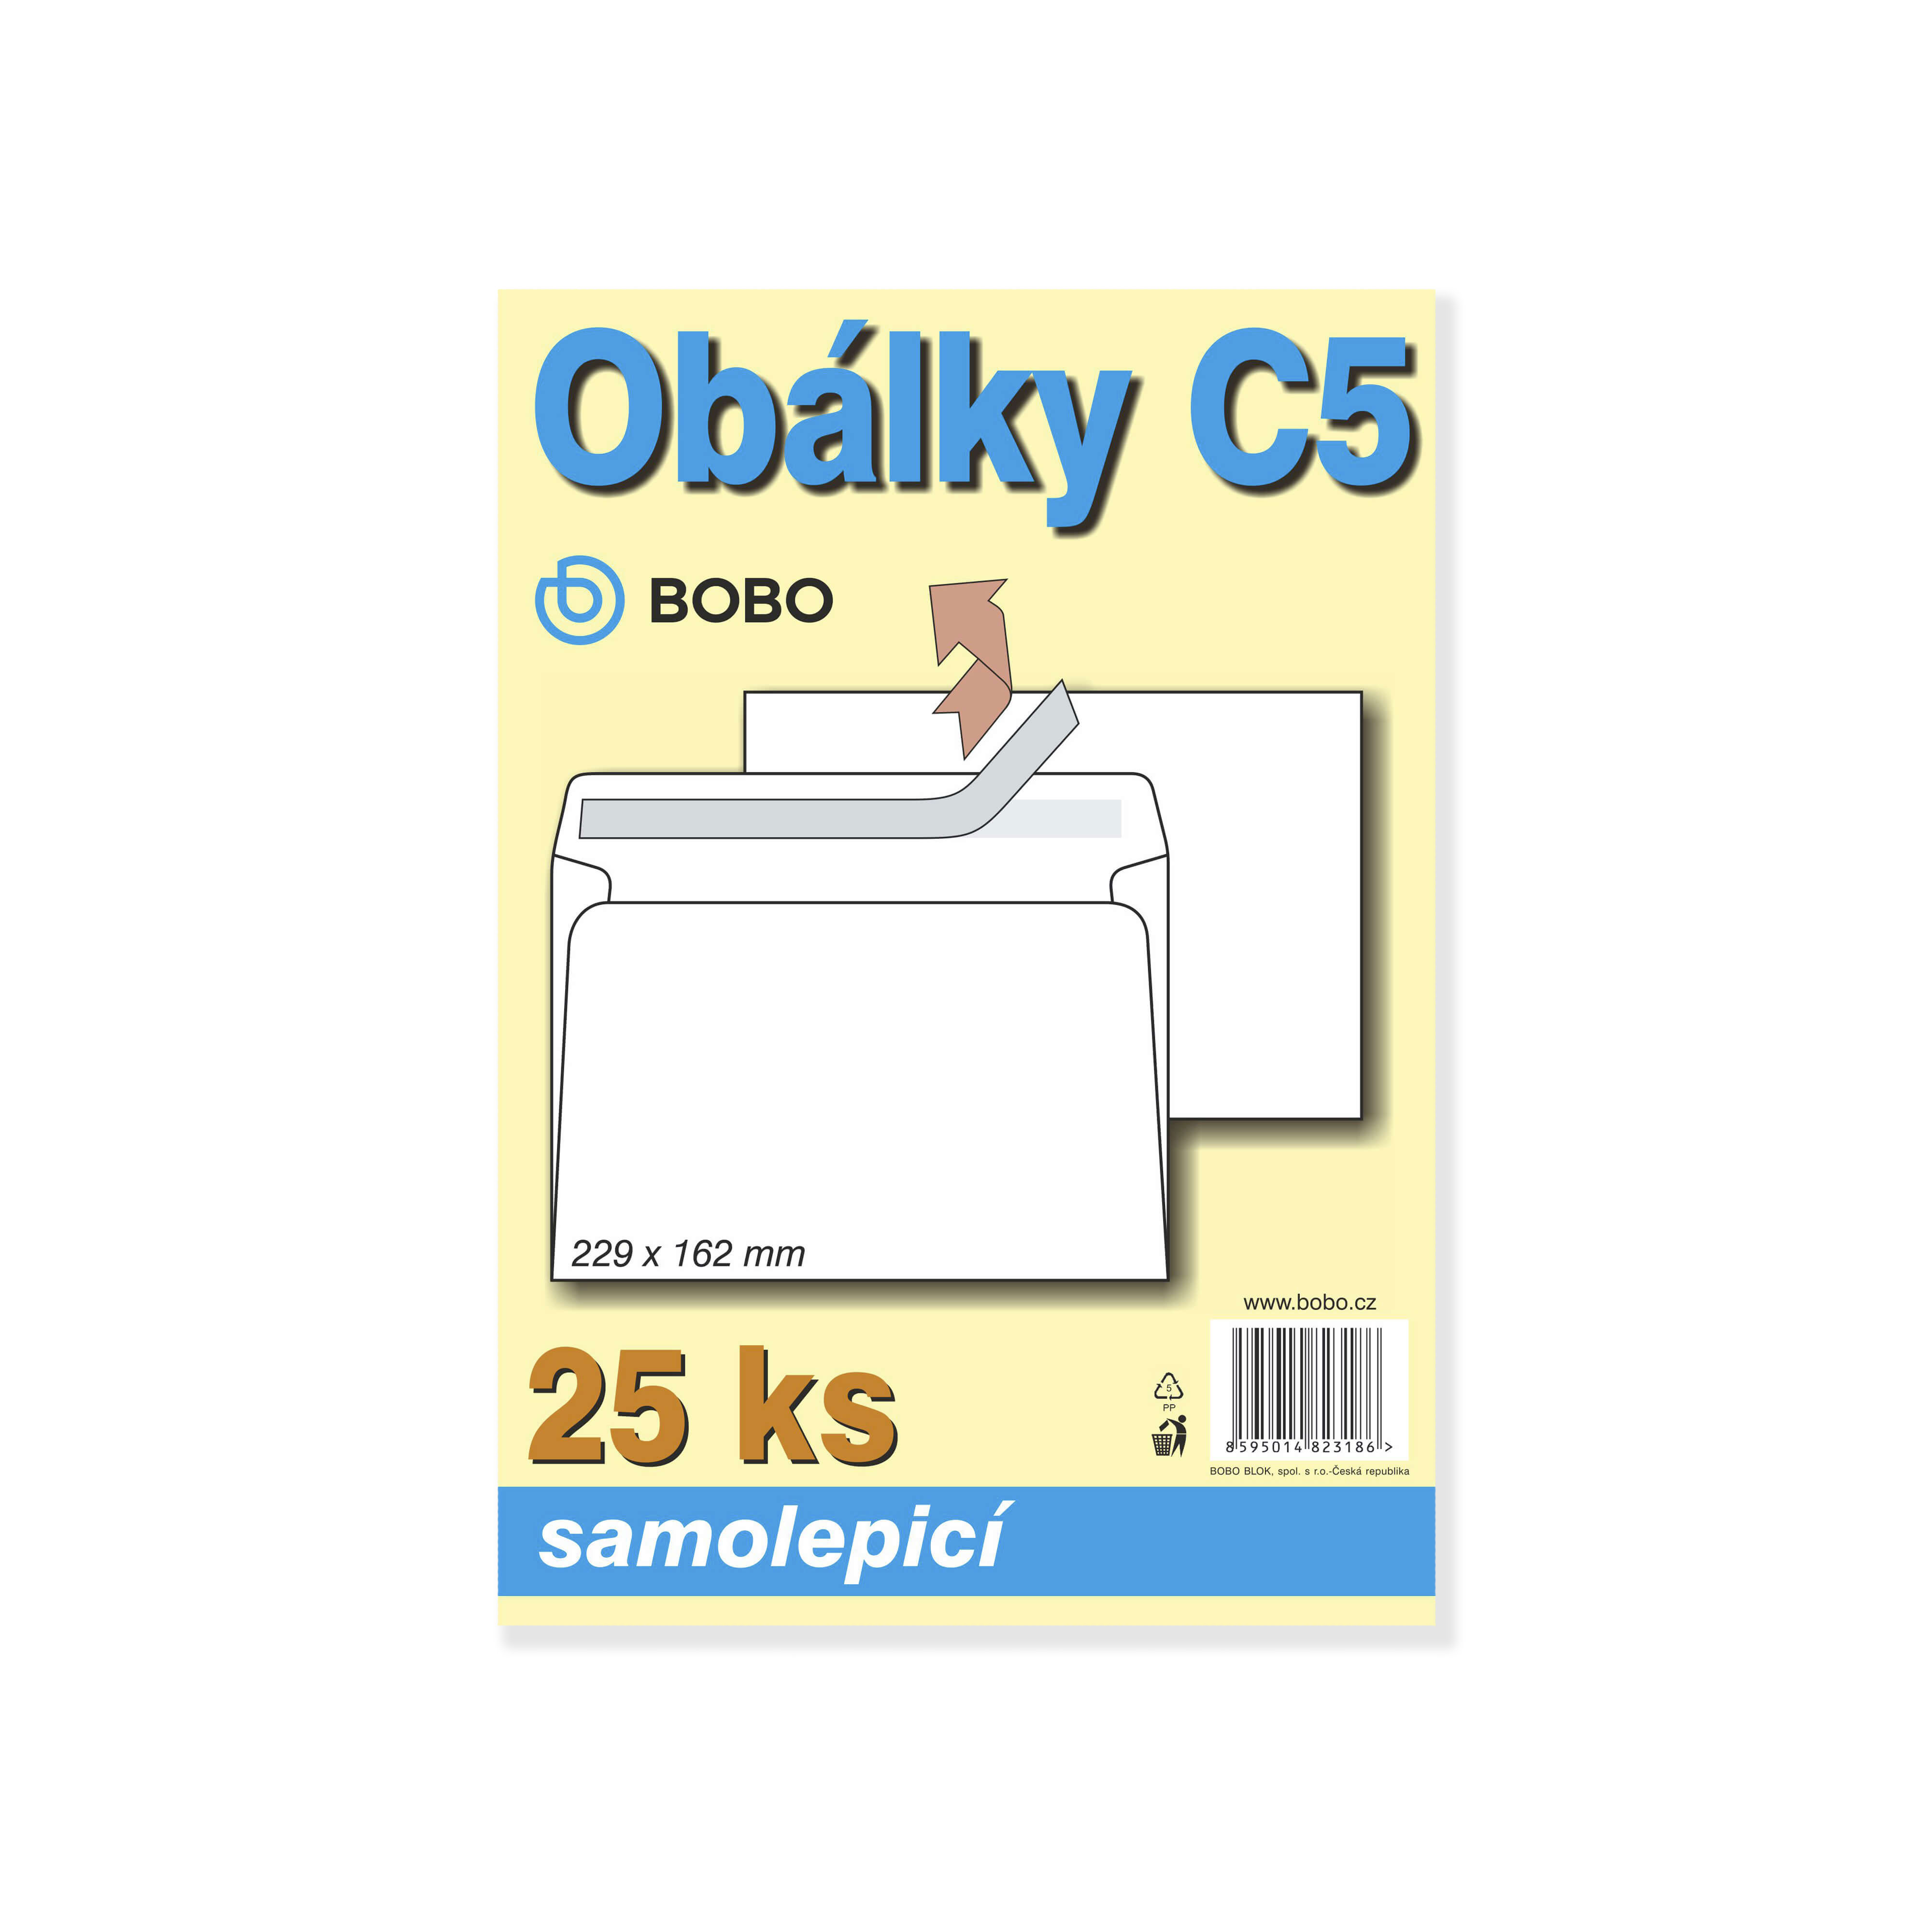 BOBO Obálky C5-samolepící